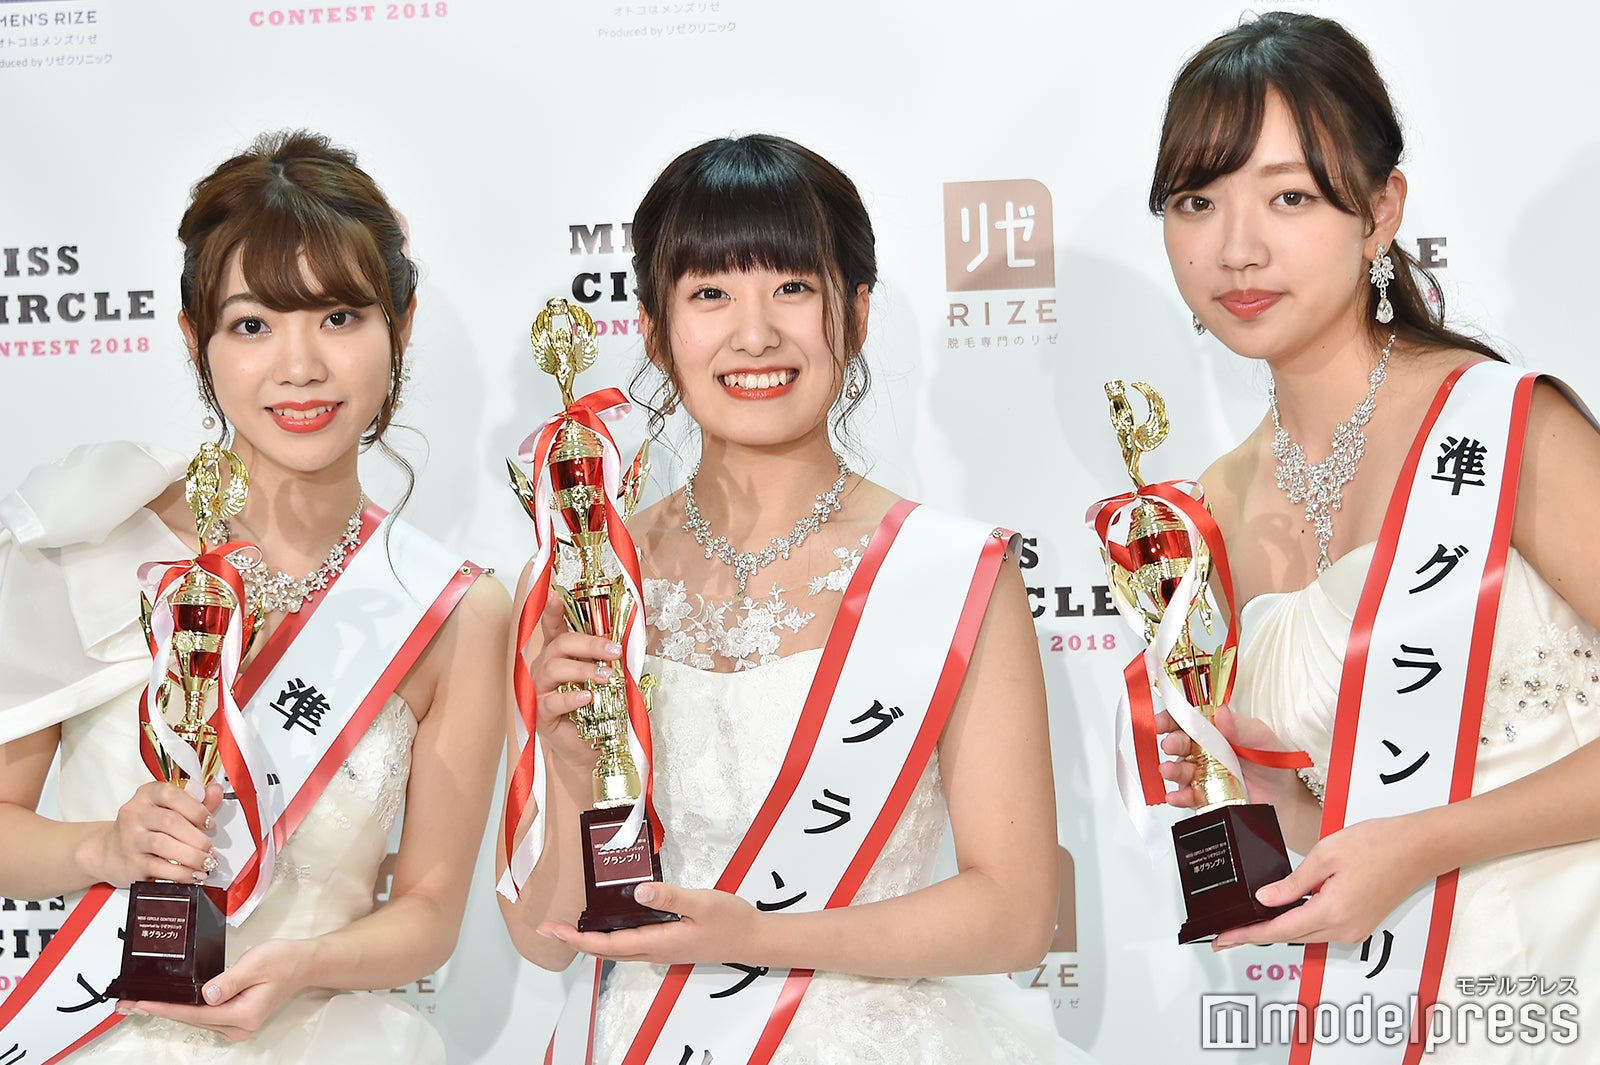 日本一の大学サークル美女 準グランプリは五十嵐瑞姫さん 大間知莉奈さん 美女たちの努力と苦労 ショックが大きくて 諦めそうになった Miss Circle Contest 18 モデルプレス